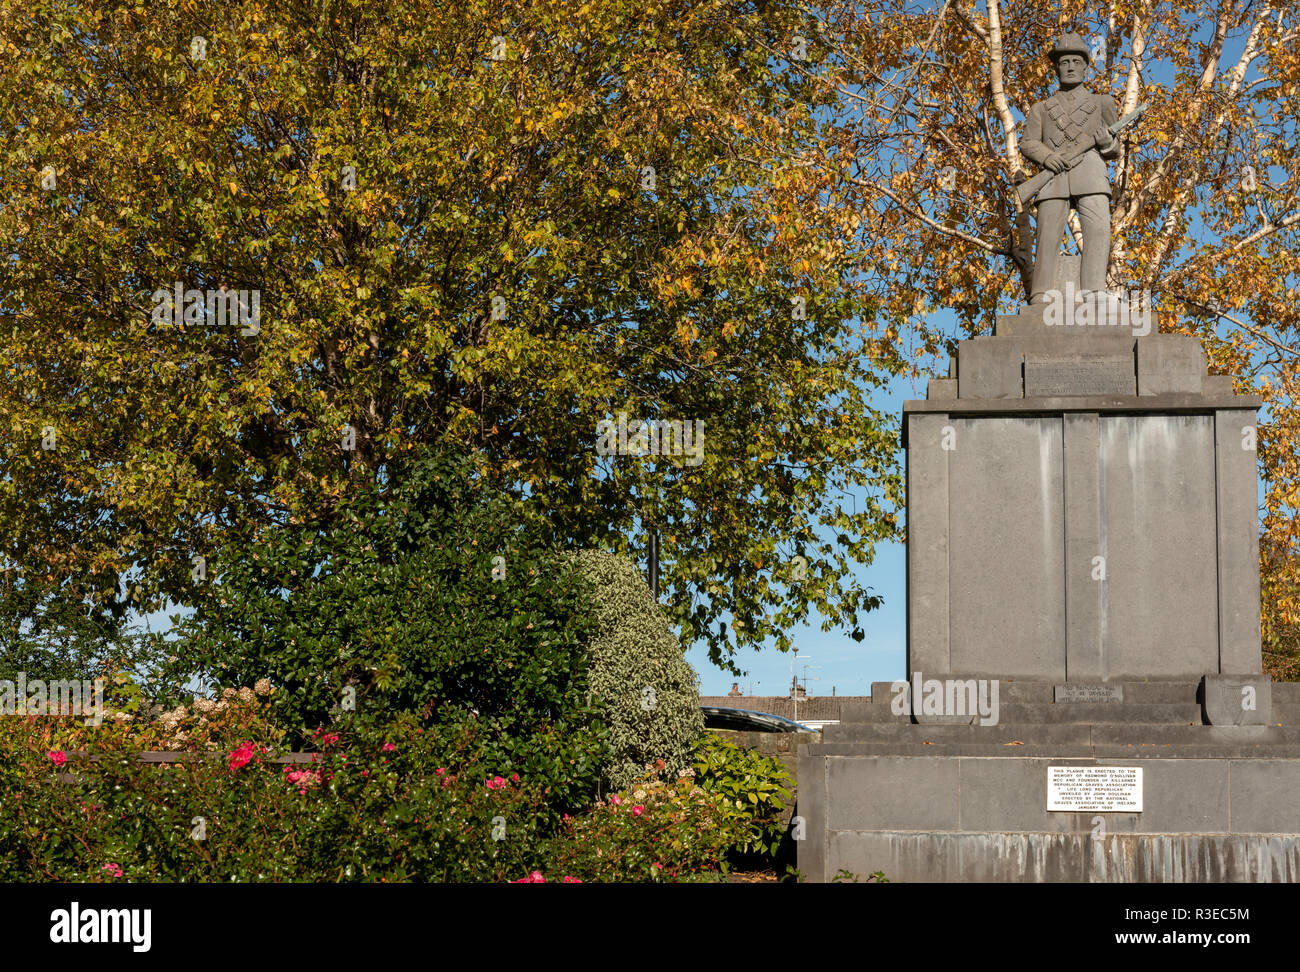 Das Kriegsdenkmal. Ein Denkmal an der Rock Road zum Gedenken an alle Soldaten, die ihr Leben für freies Irland gaben. Killarney, County Kerry, Irland. Stockfoto